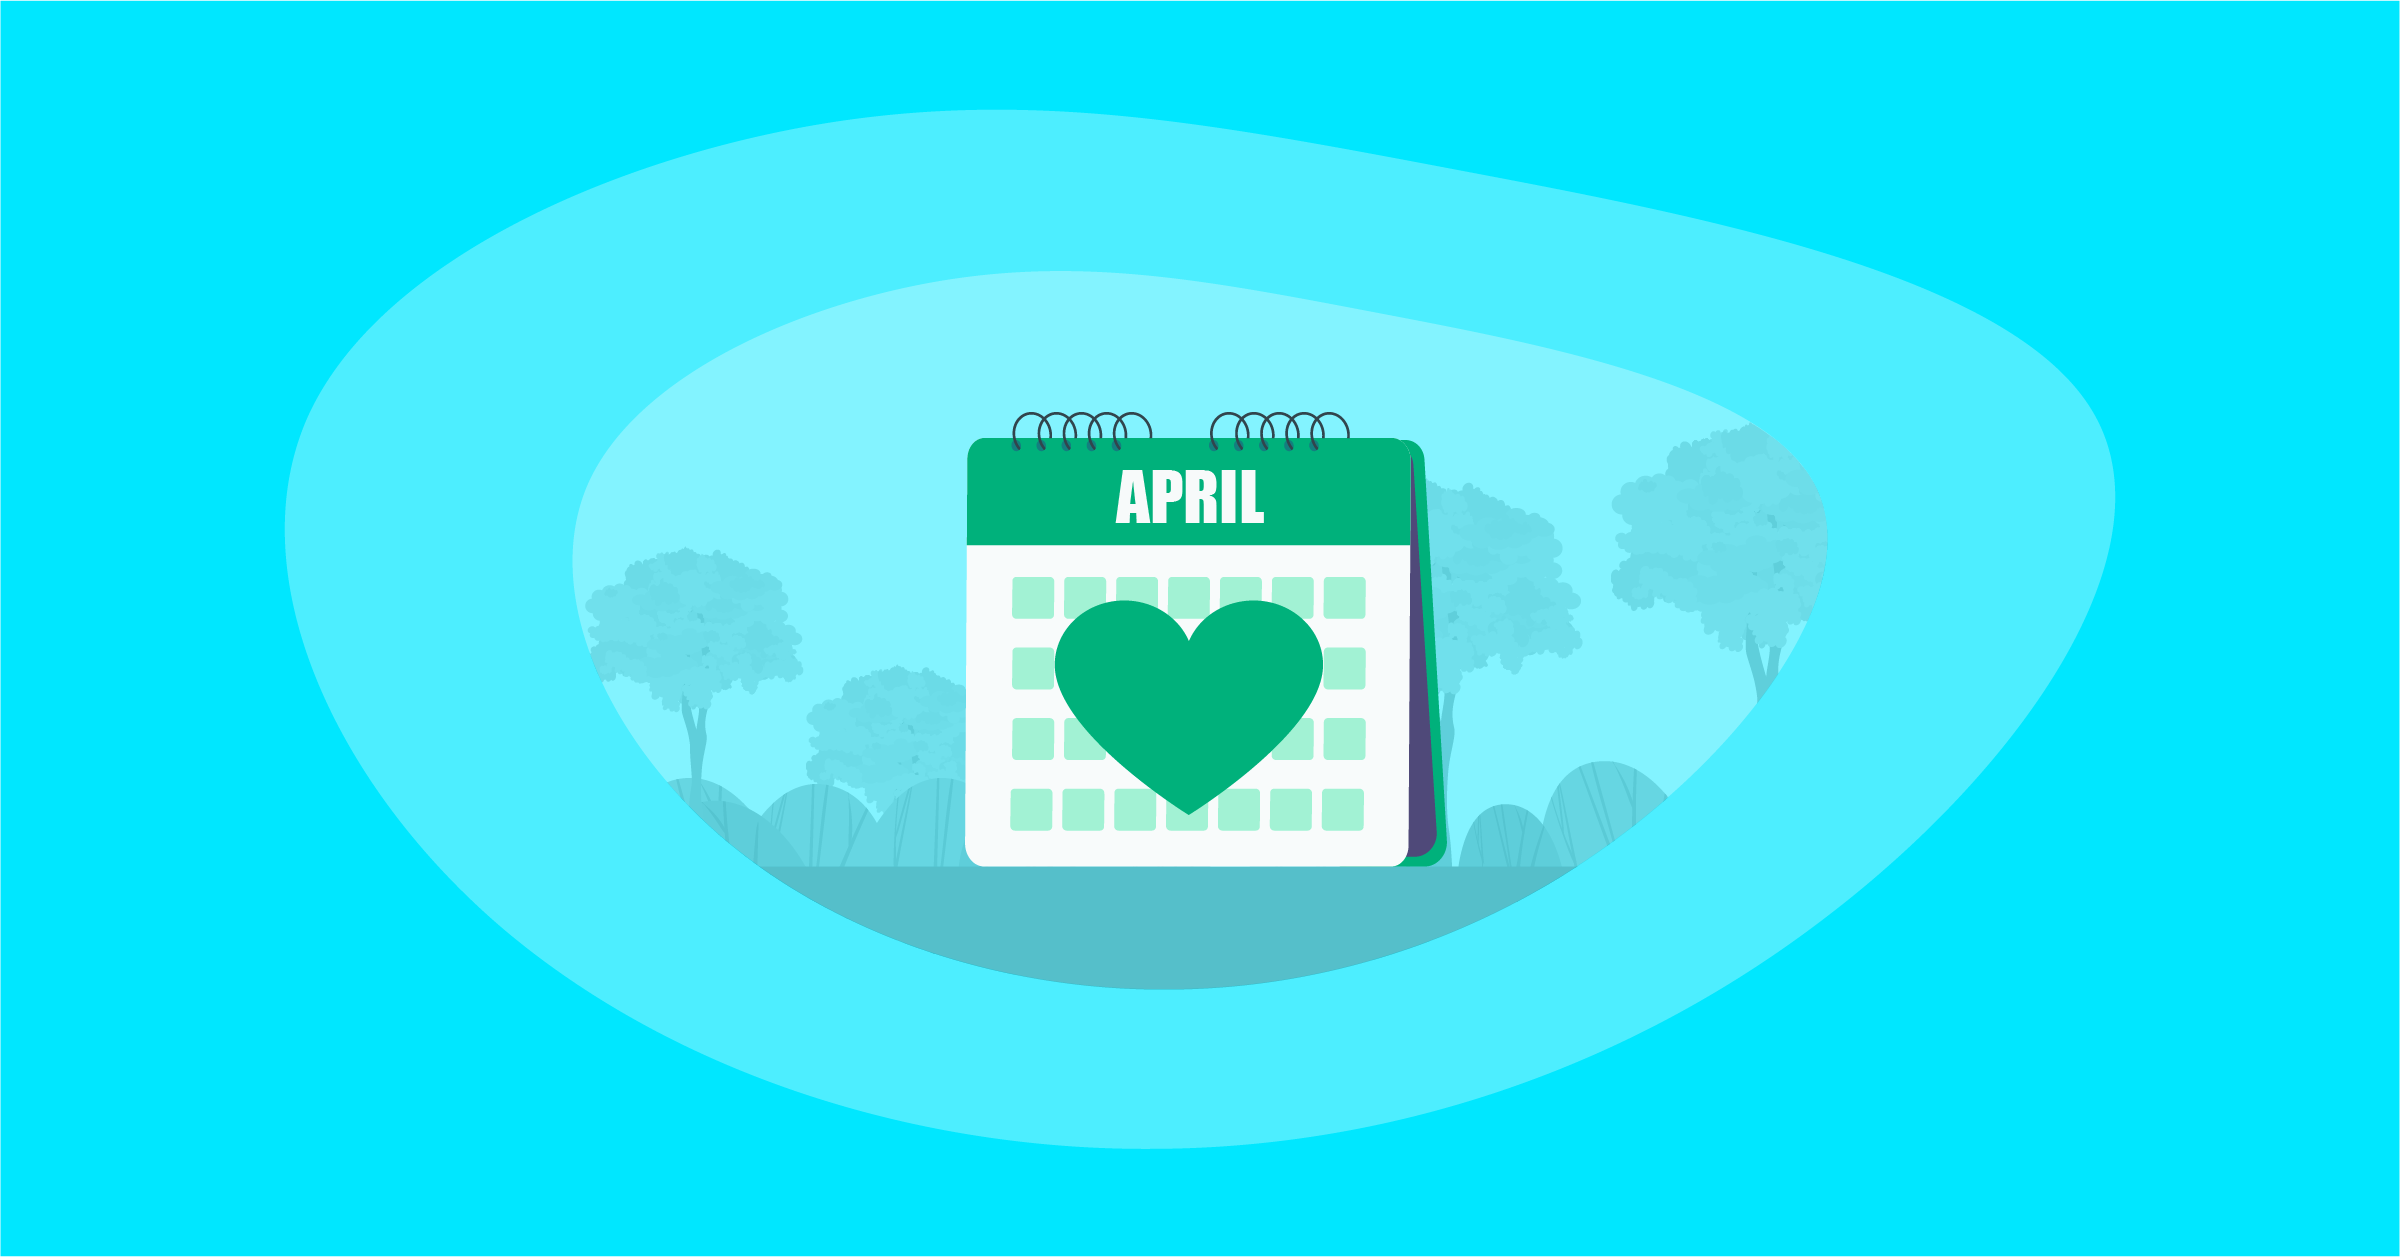 Illustration of an awareness calendar for April